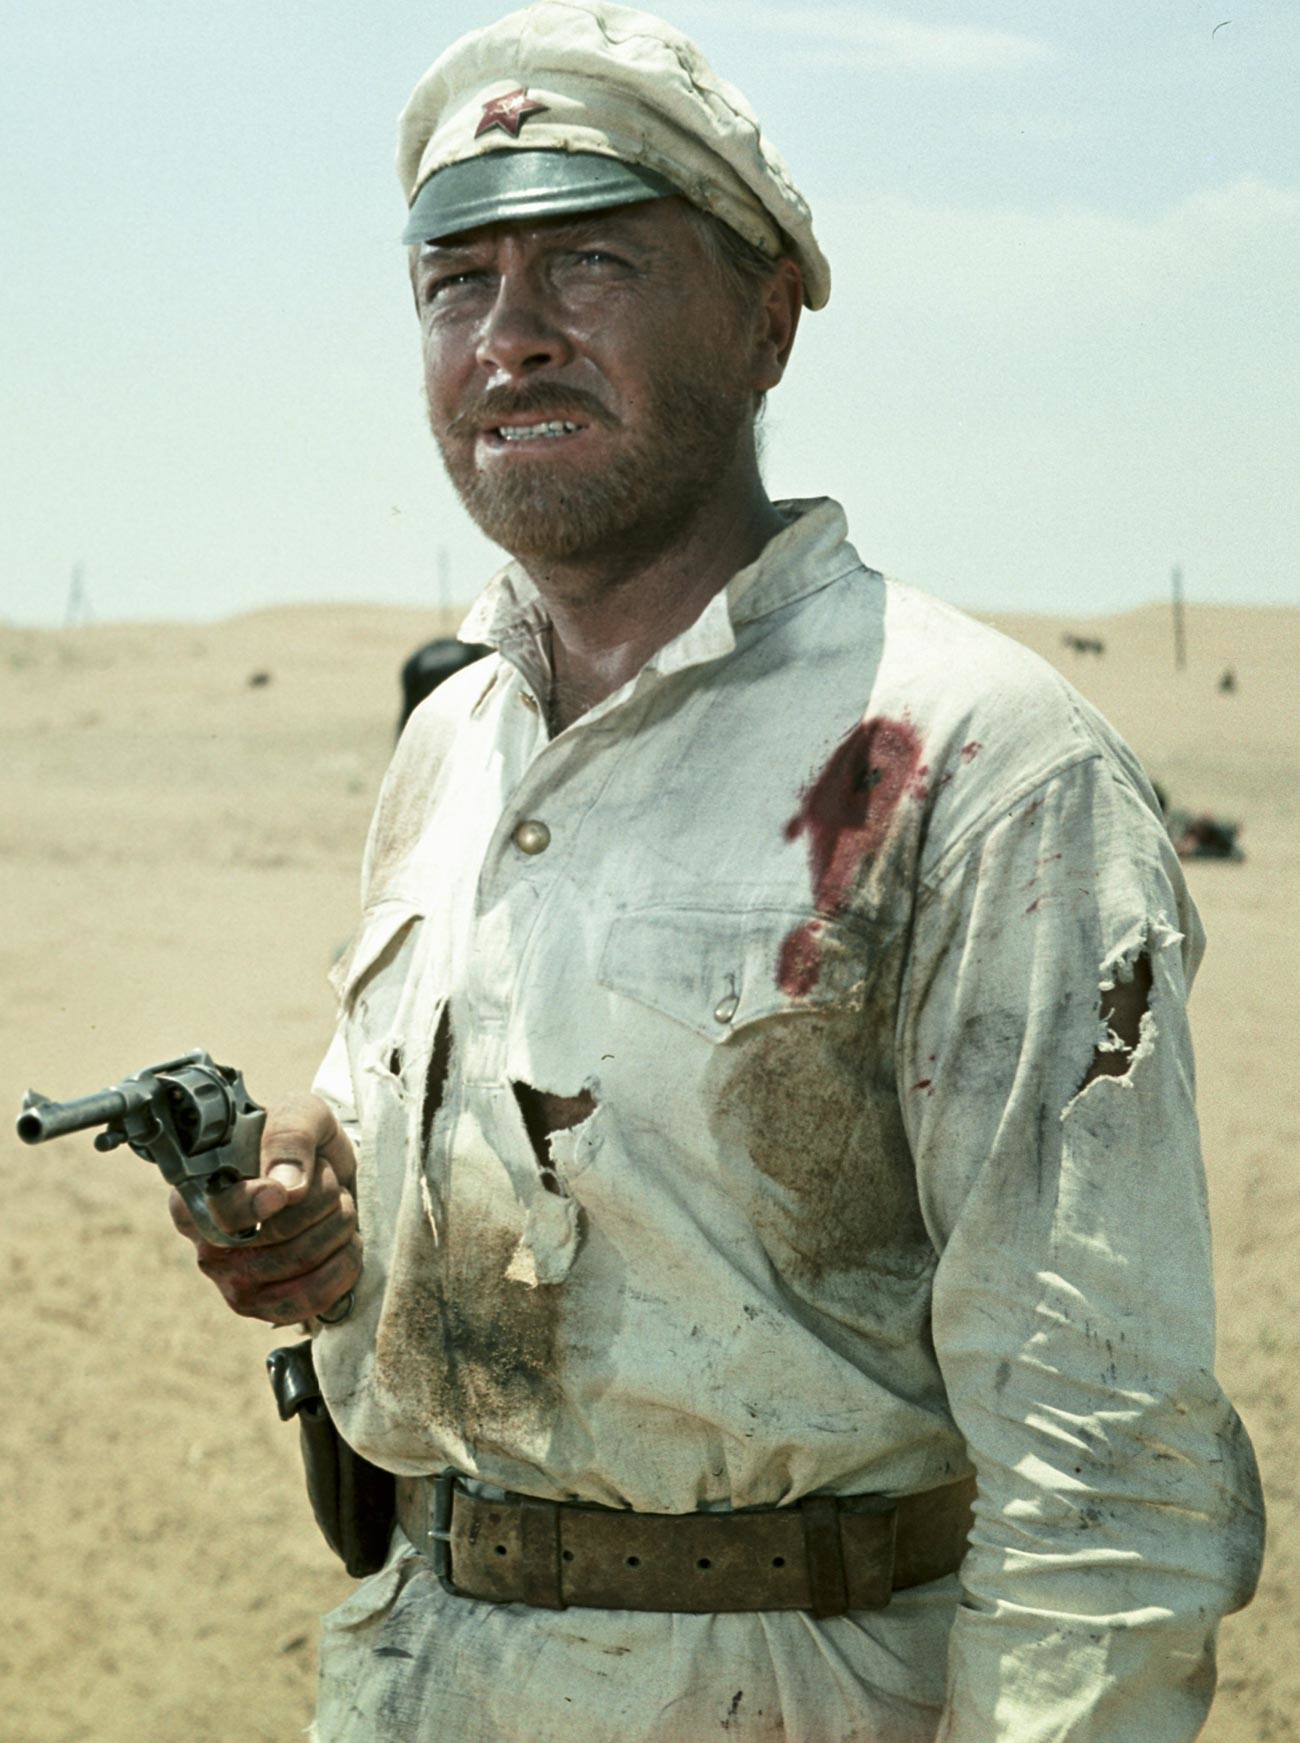 ナガン・リボルバーを持っている1920年代を舞台にする映画「砂漠の白い太陽」の主人公